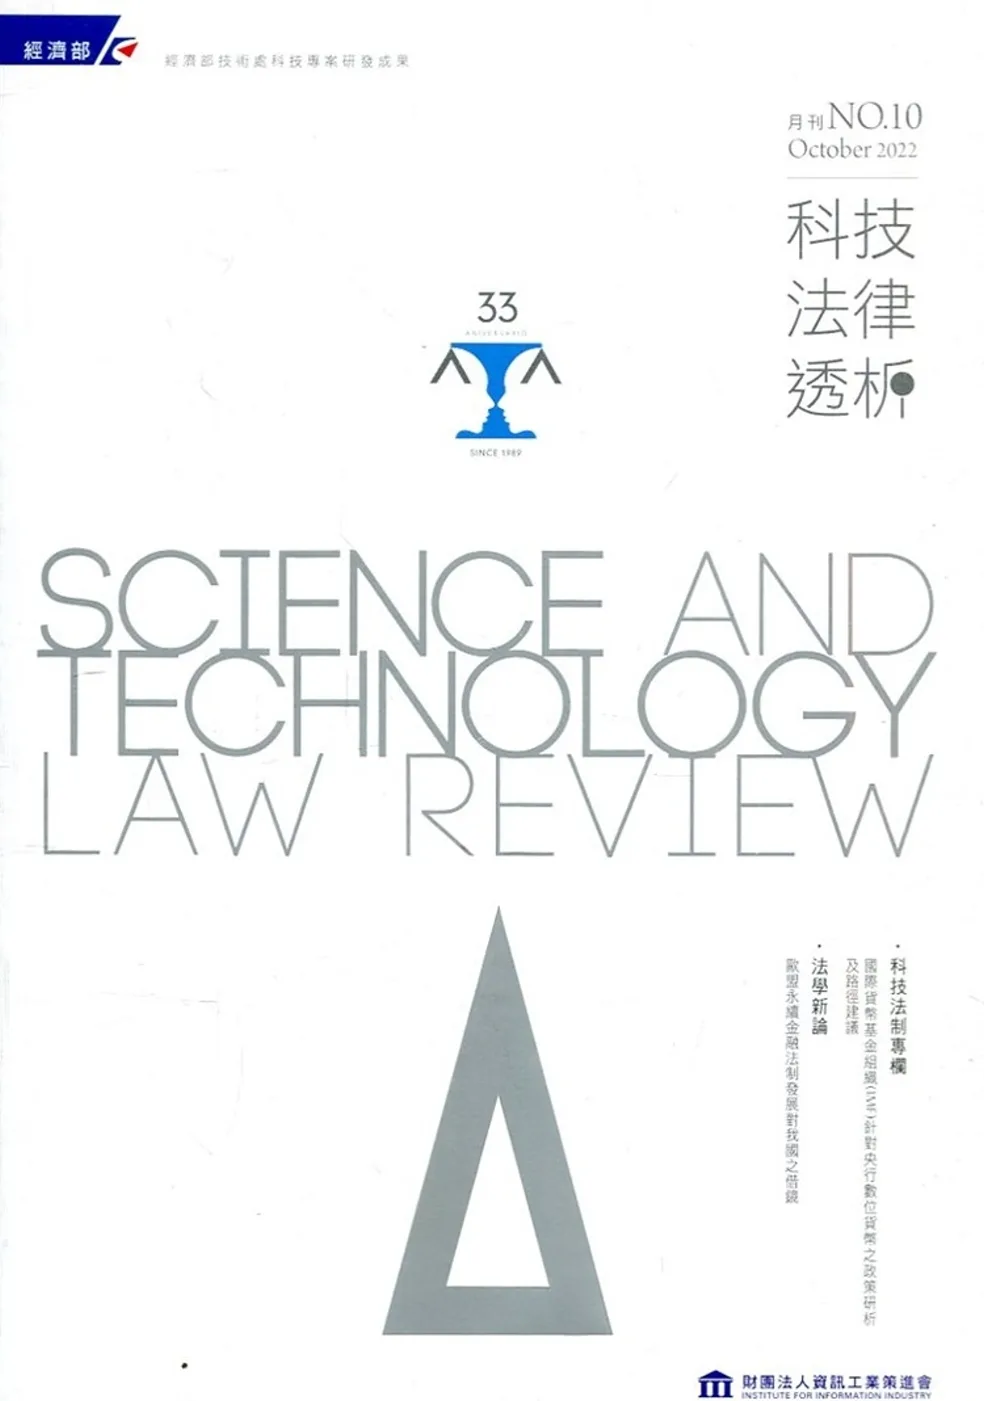 科技法律透析月刊第34卷第10期